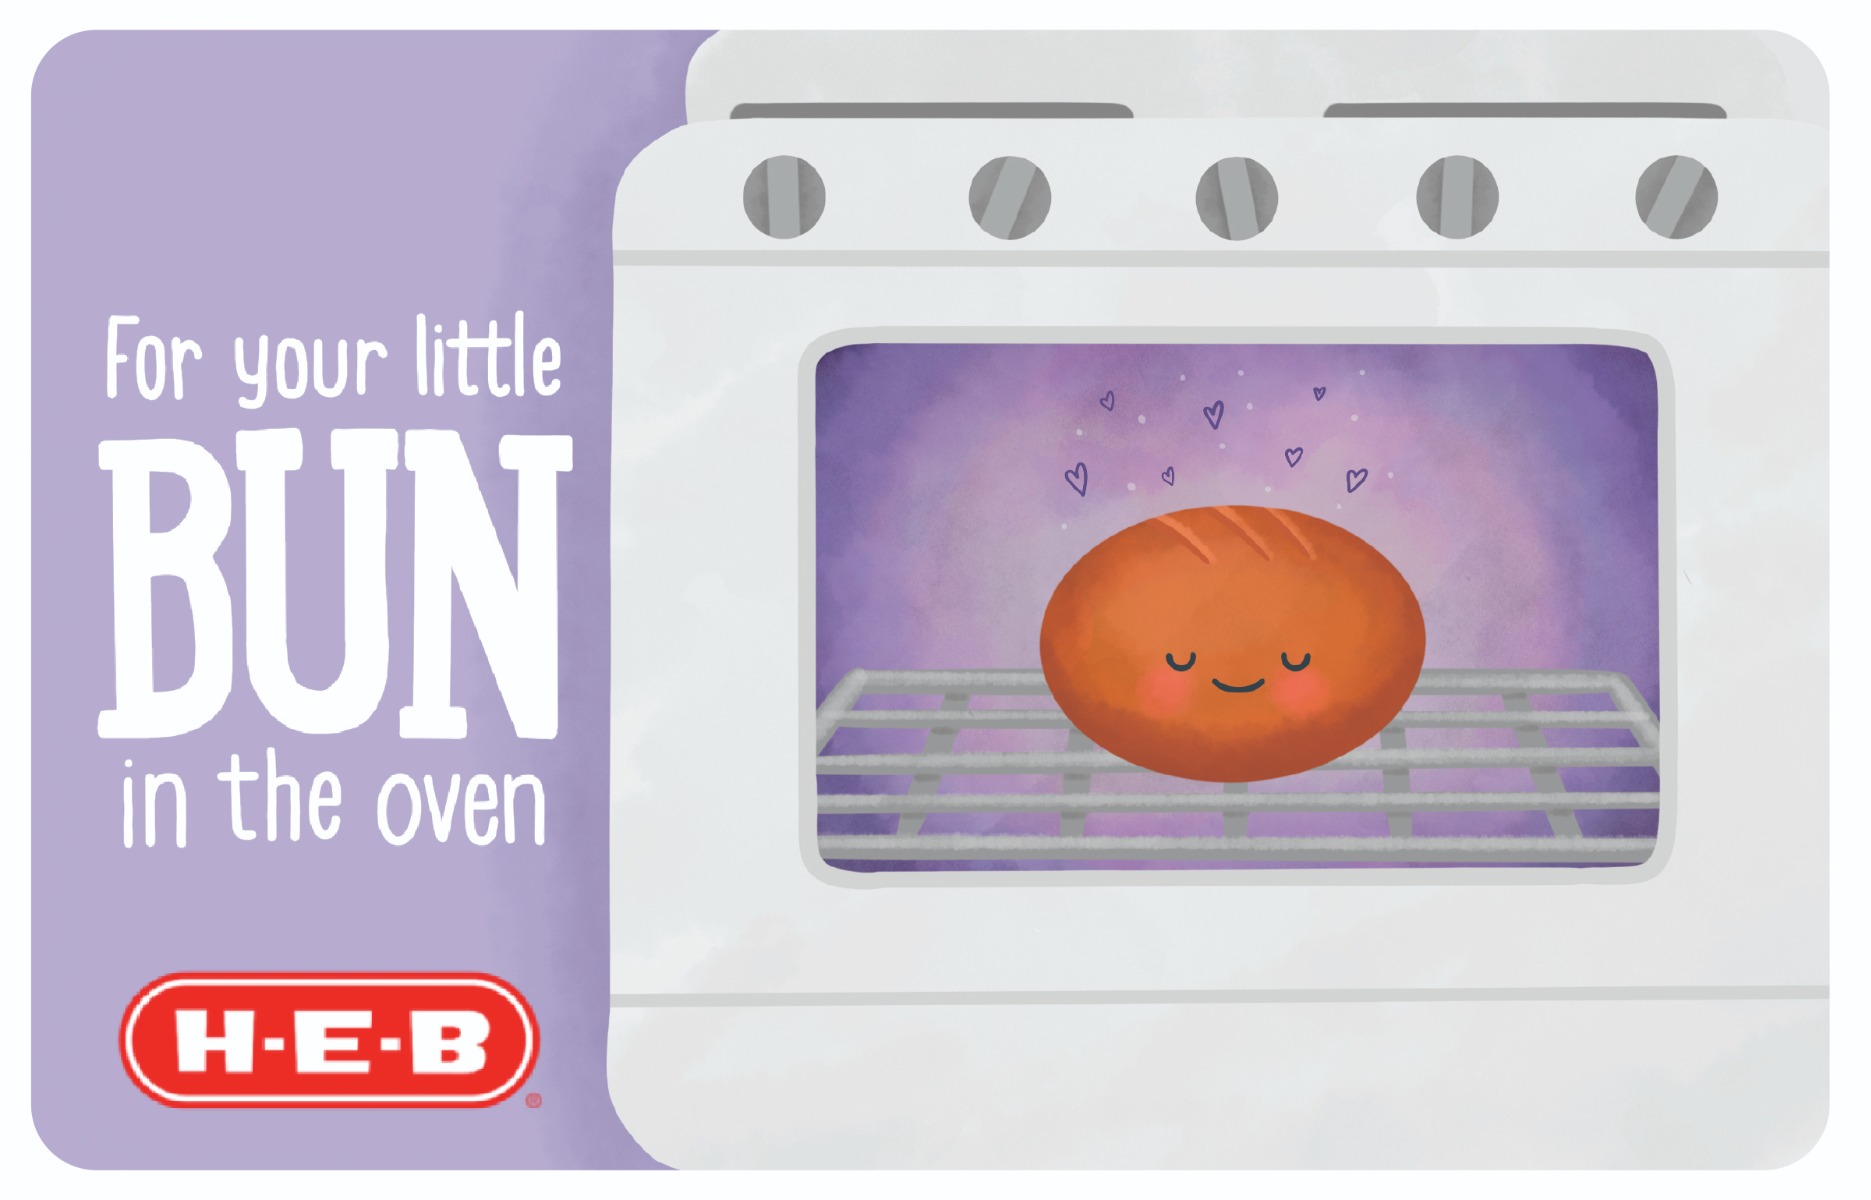 H-E-B Bun in the Oven